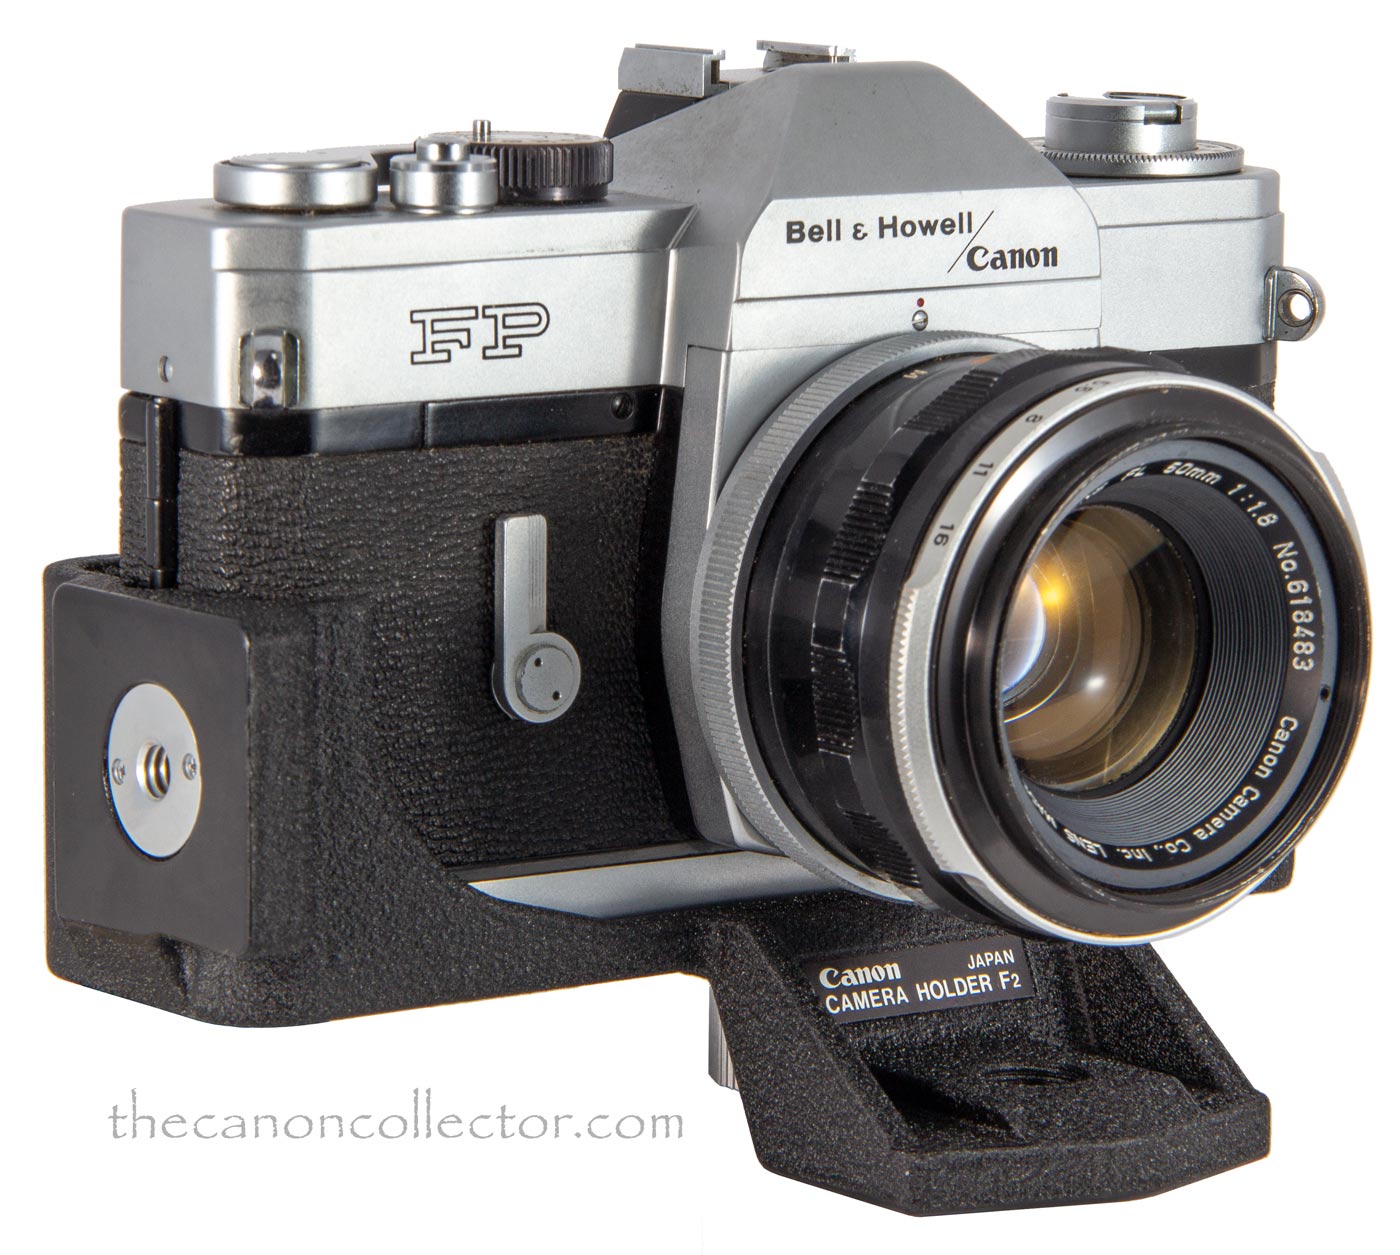 Canon Camera Holder F2